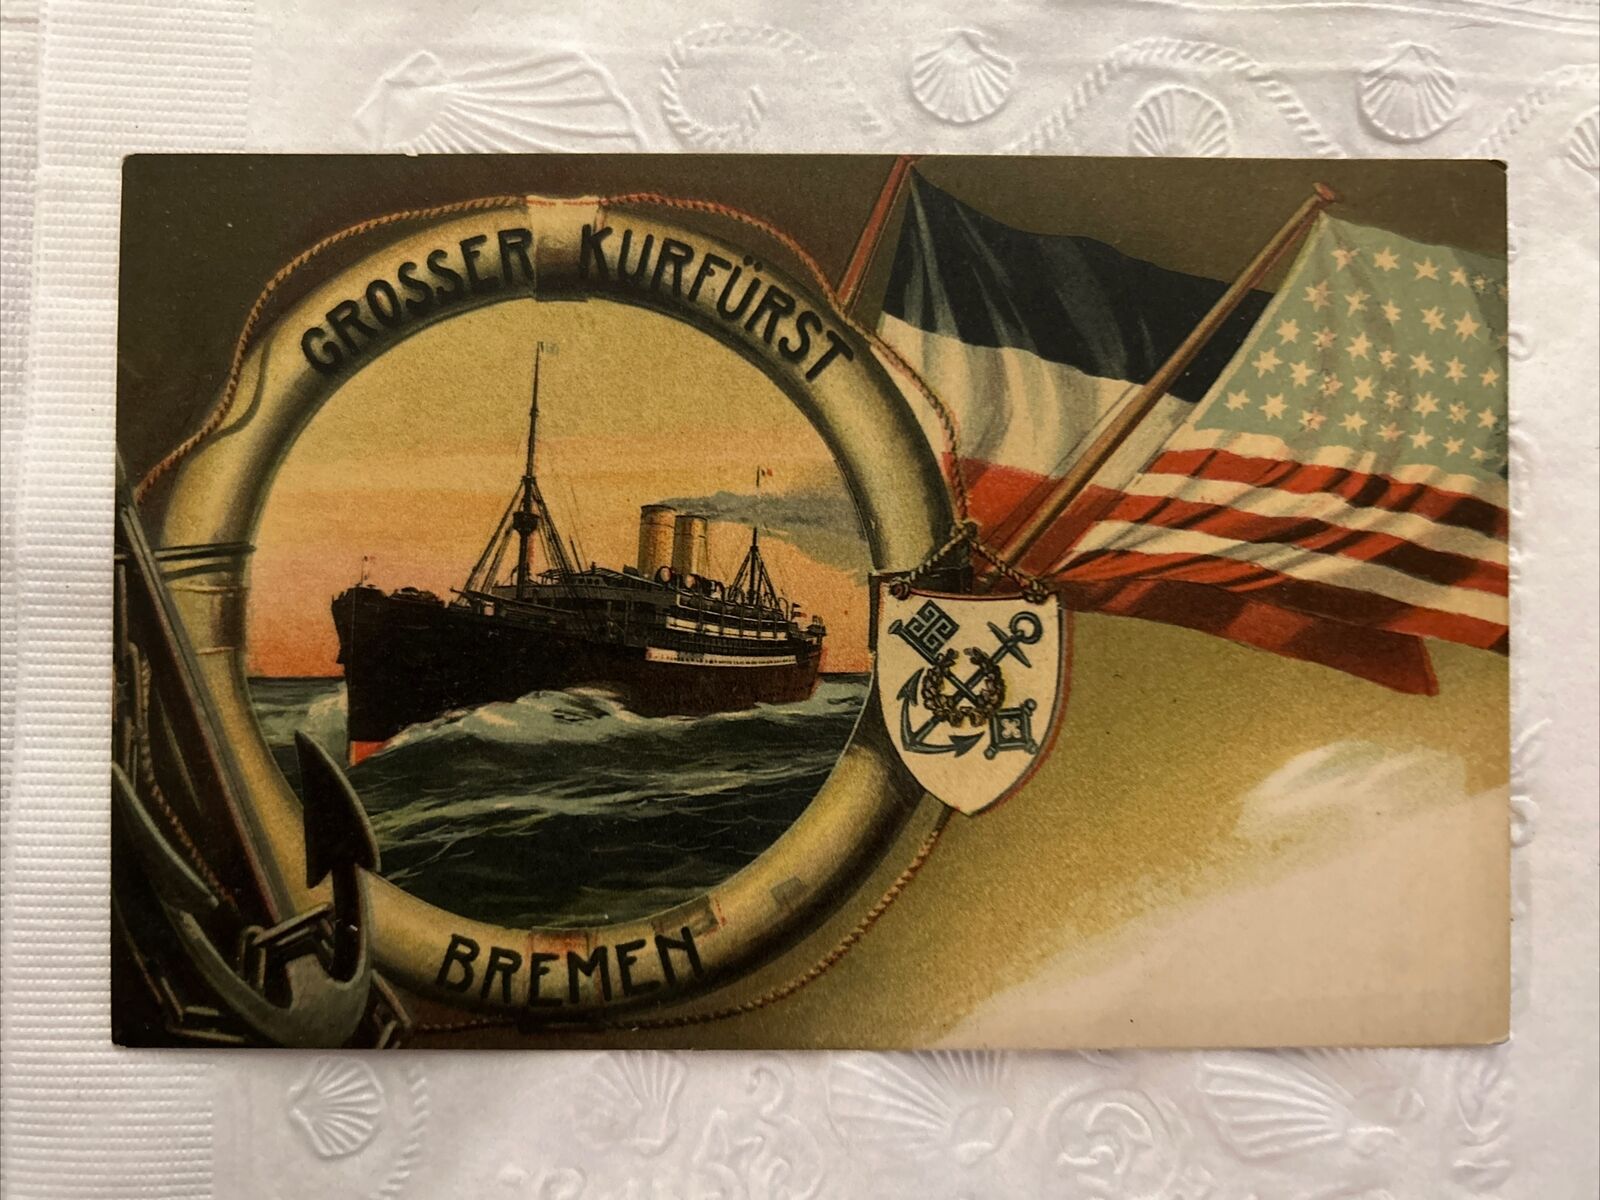 Grosser Kurfurst Bremen Ship Vintage Postcard